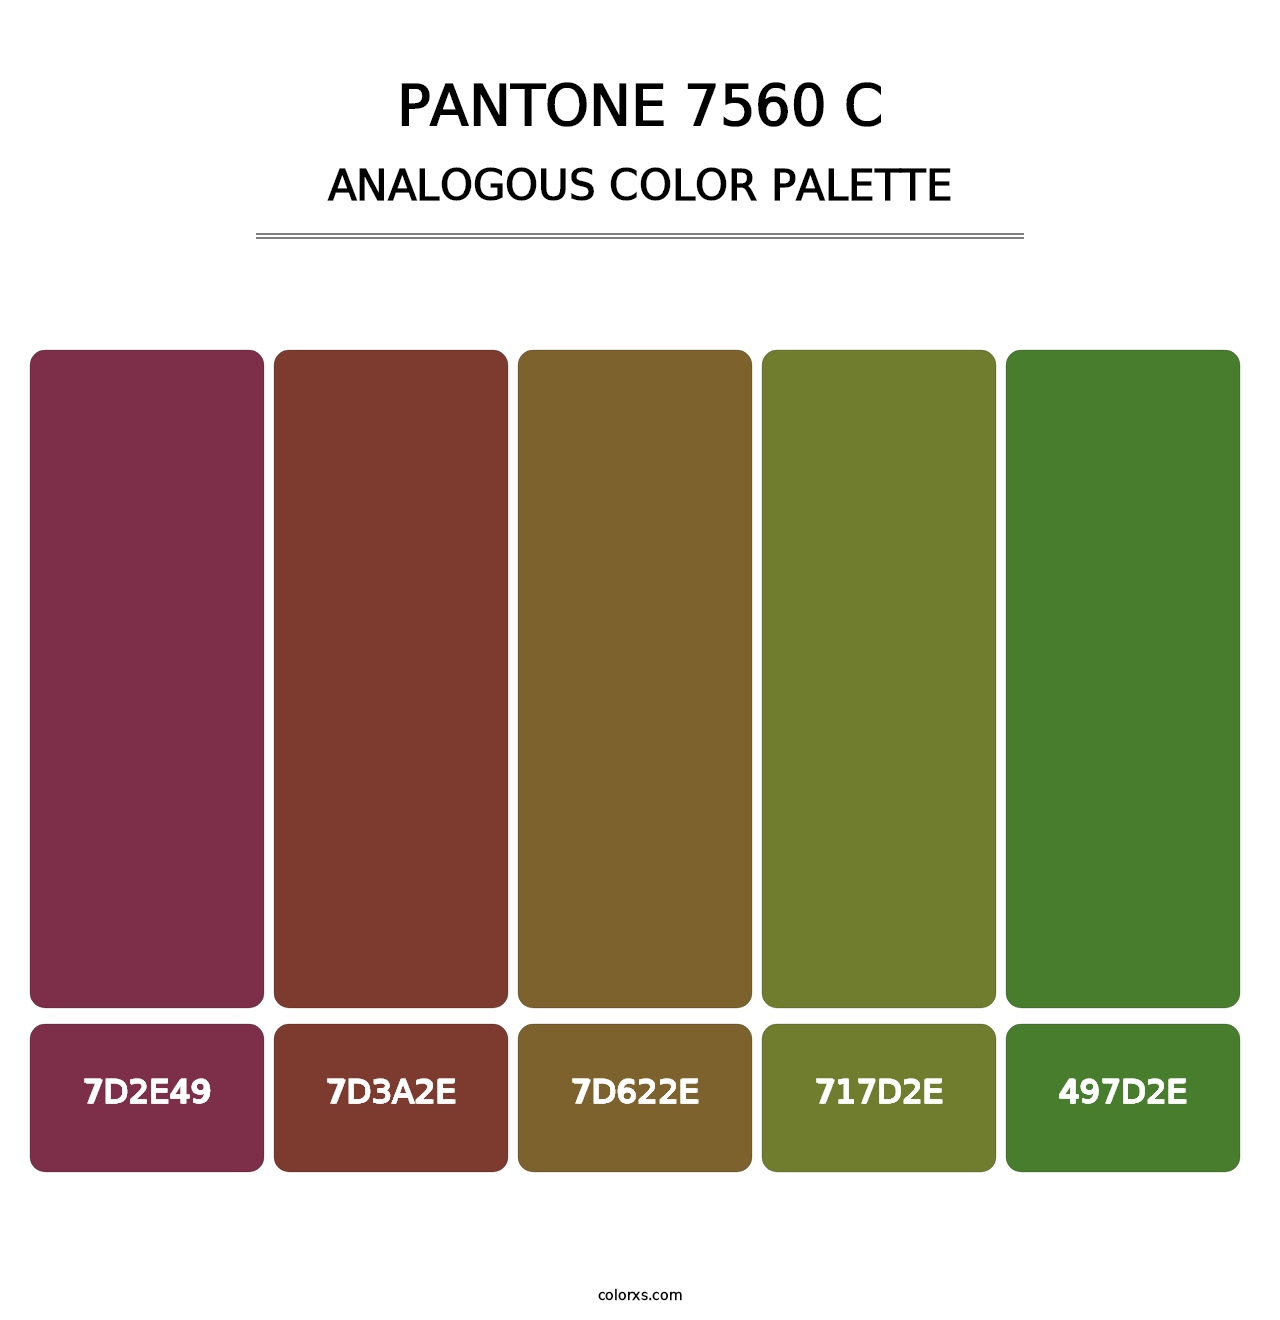 PANTONE 7560 C - Analogous Color Palette